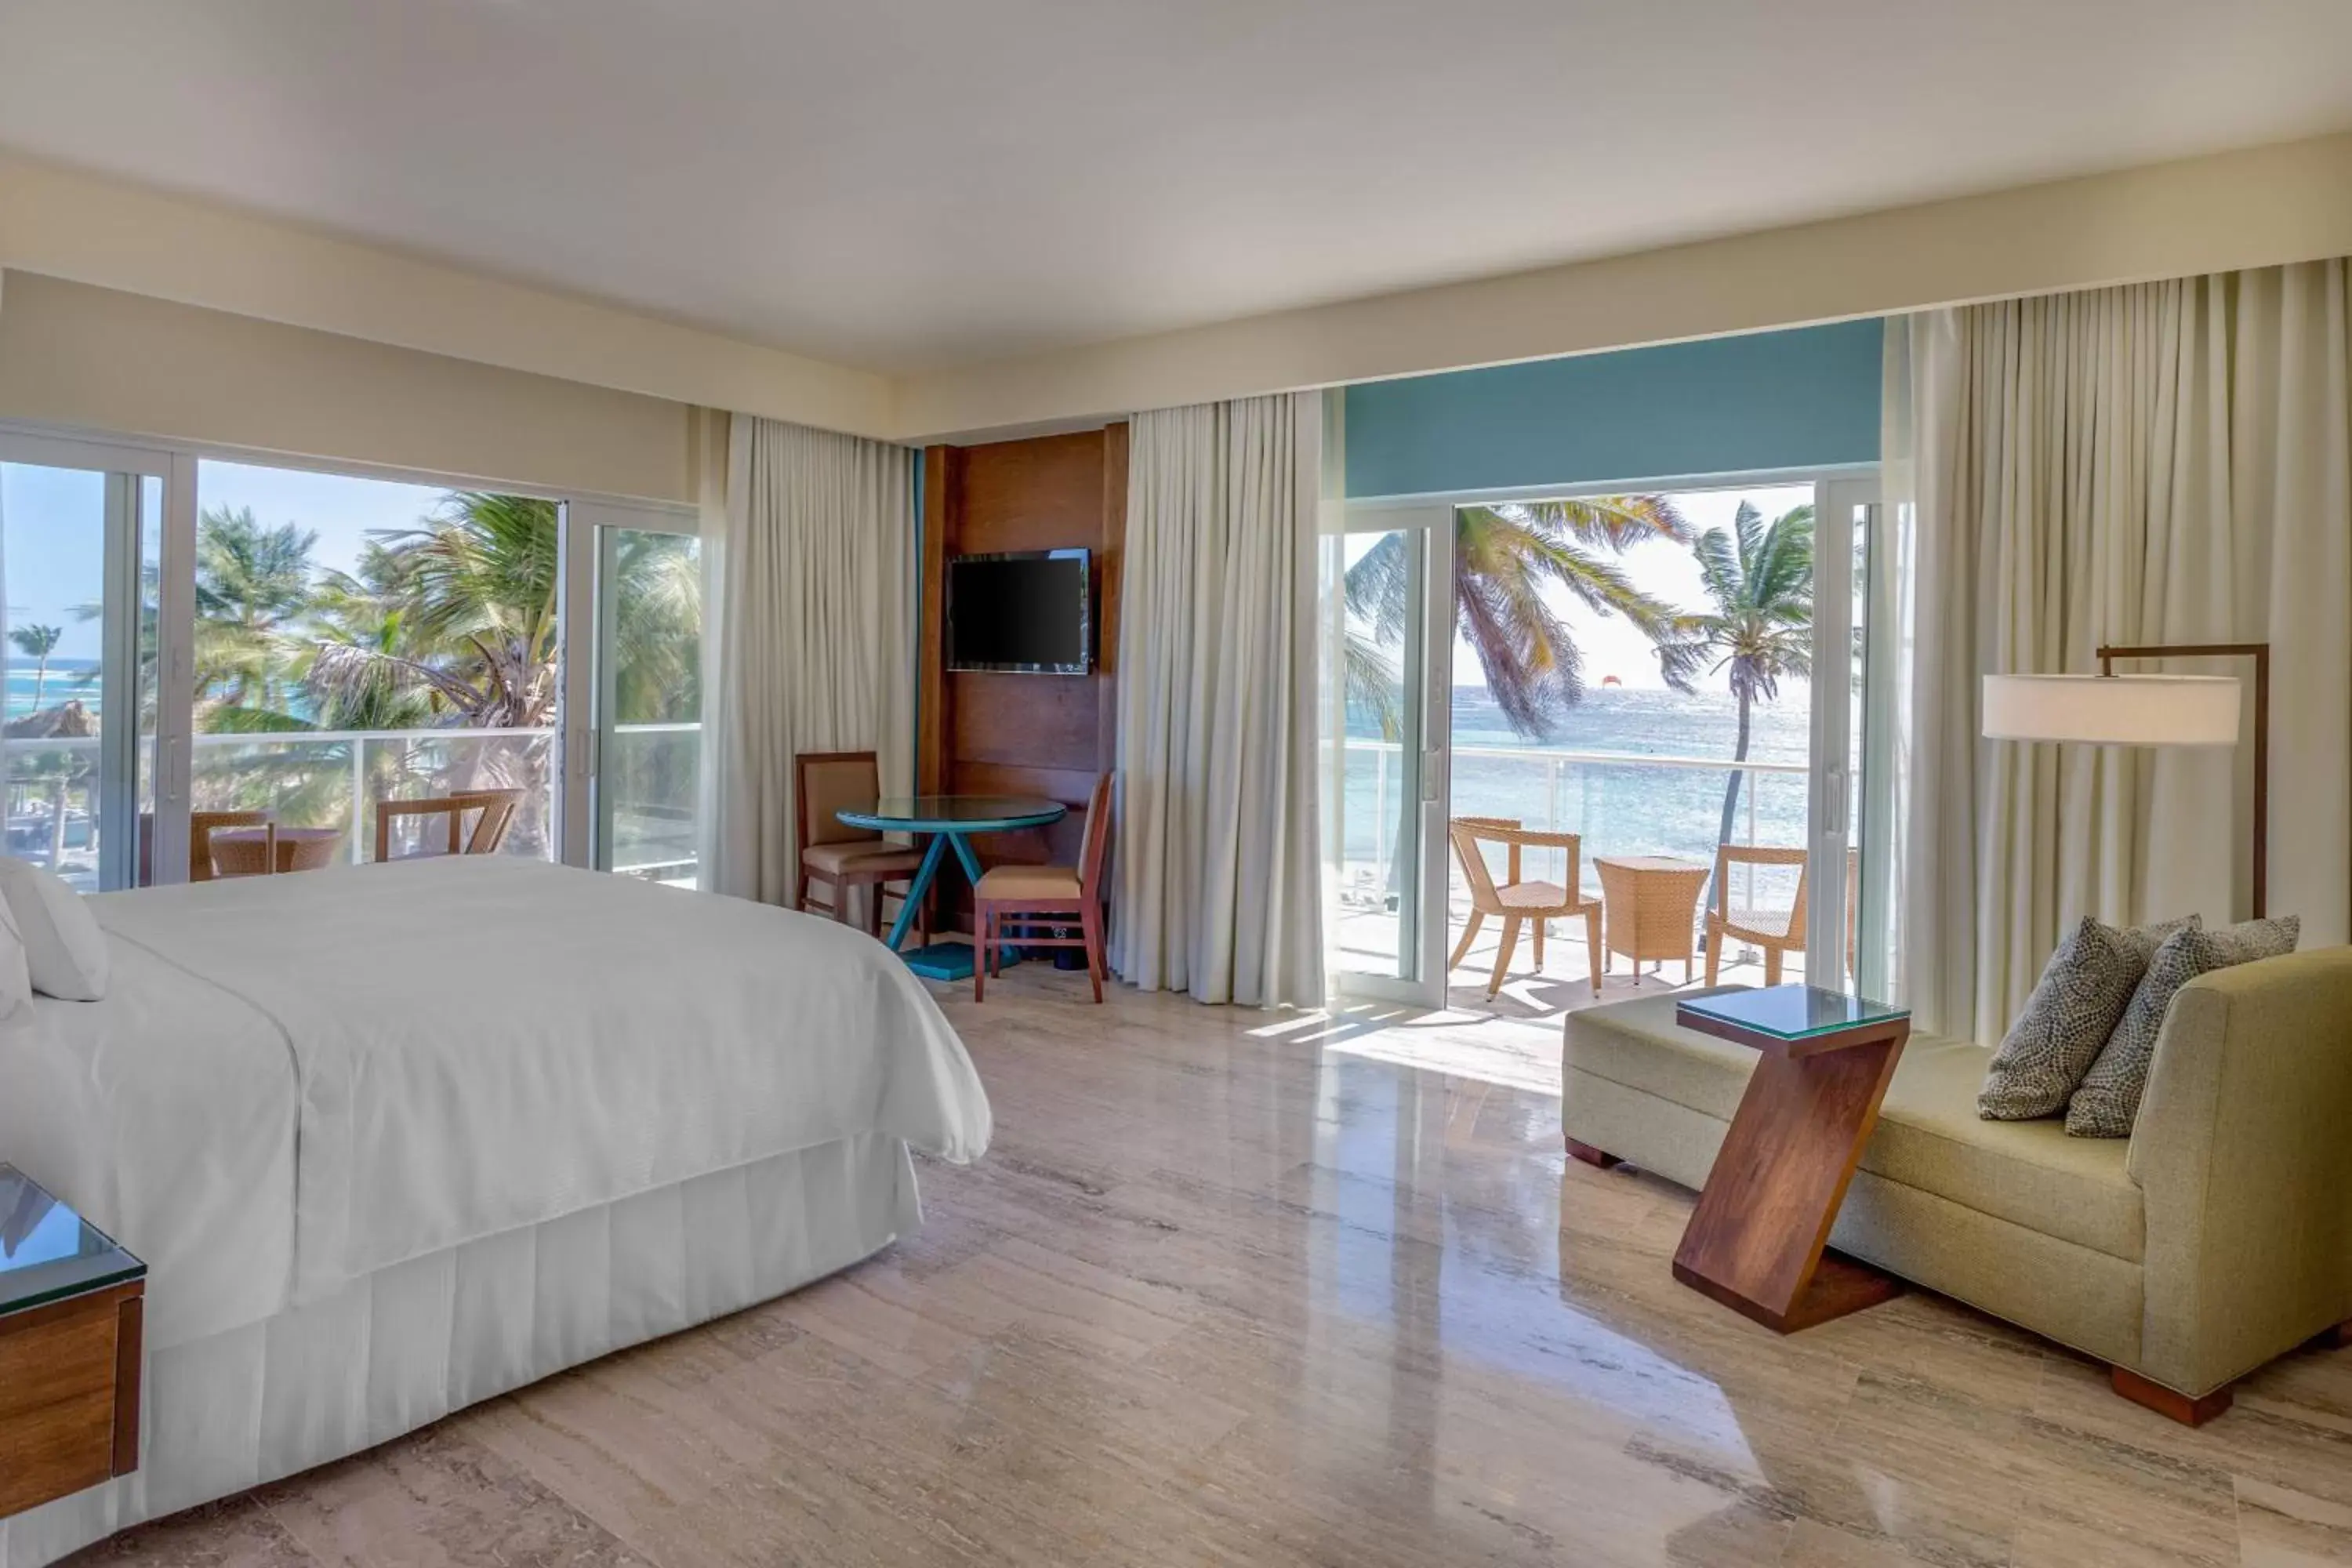 Bedroom in The Westin Puntacana Resort & Club